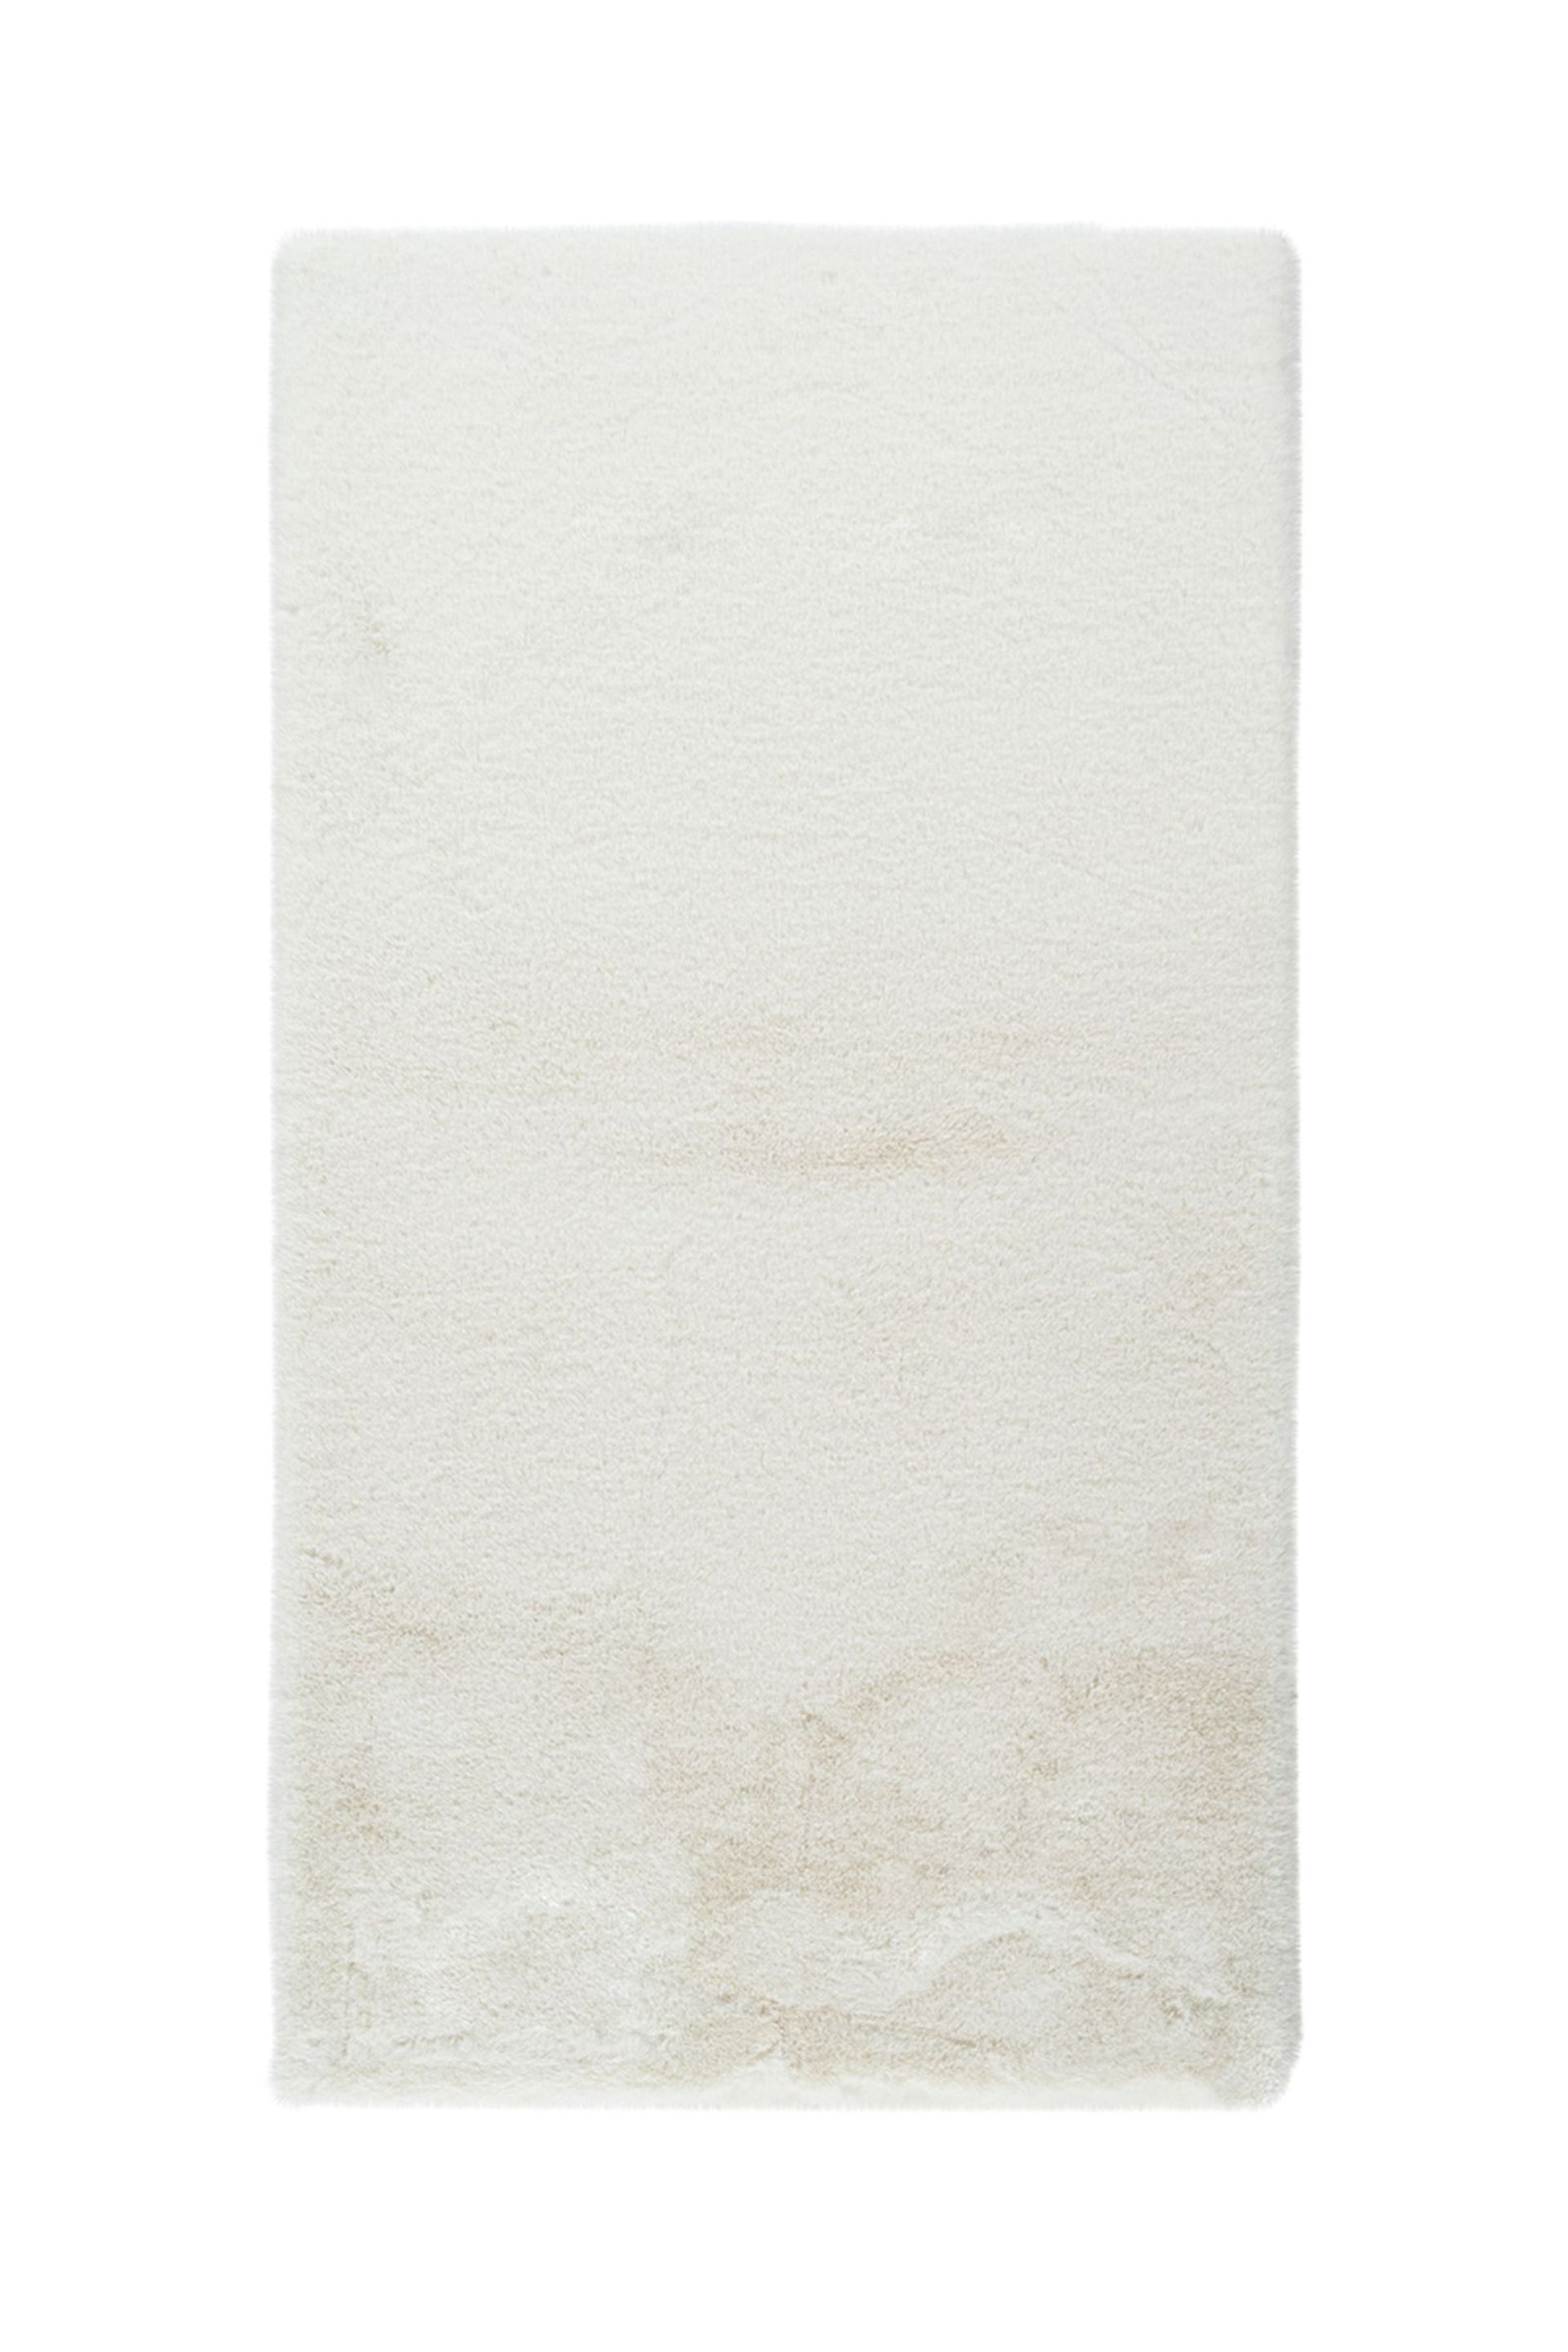 Badematte Rabbit Light 625 Weiß 50 cm x 90 cm